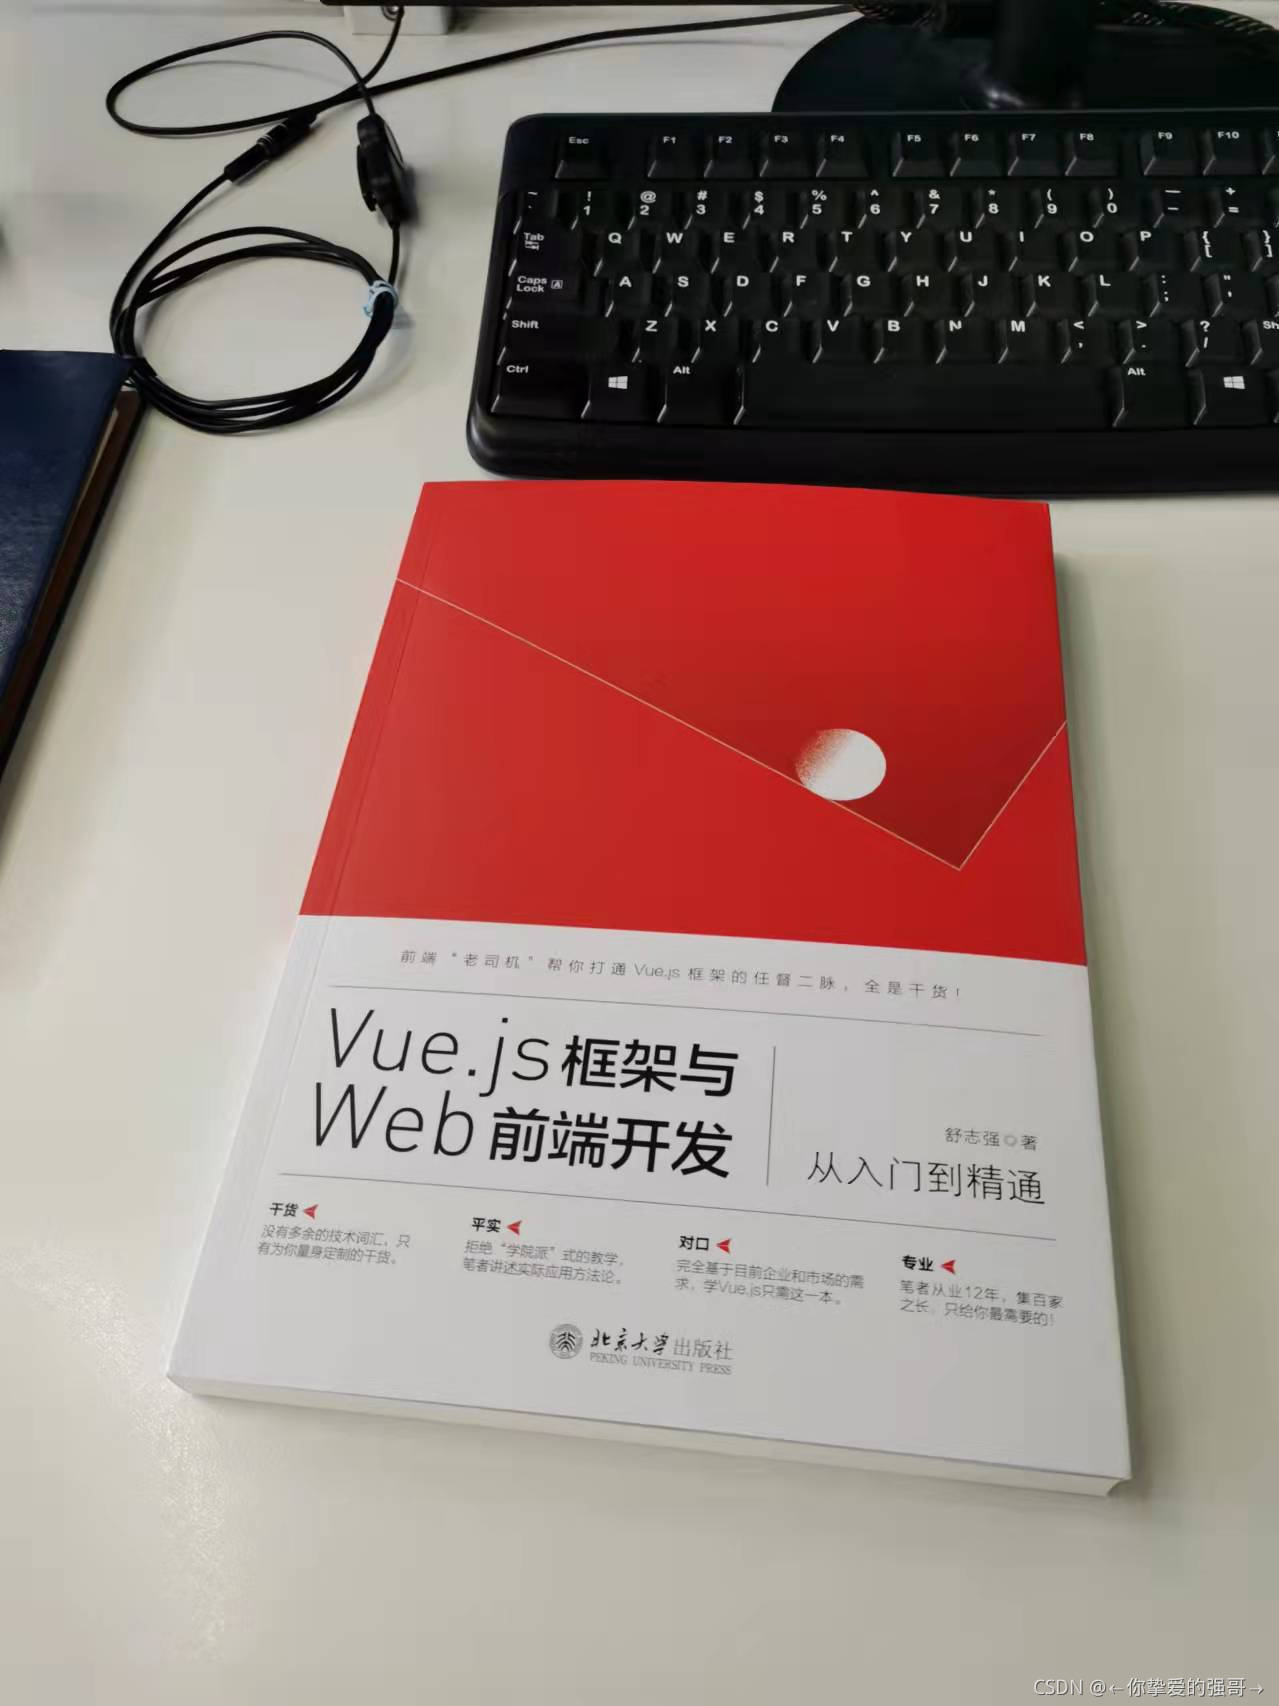 推荐一本Vue.js书籍给你们《Vue.js框架与Web前端开发从入门到精通》